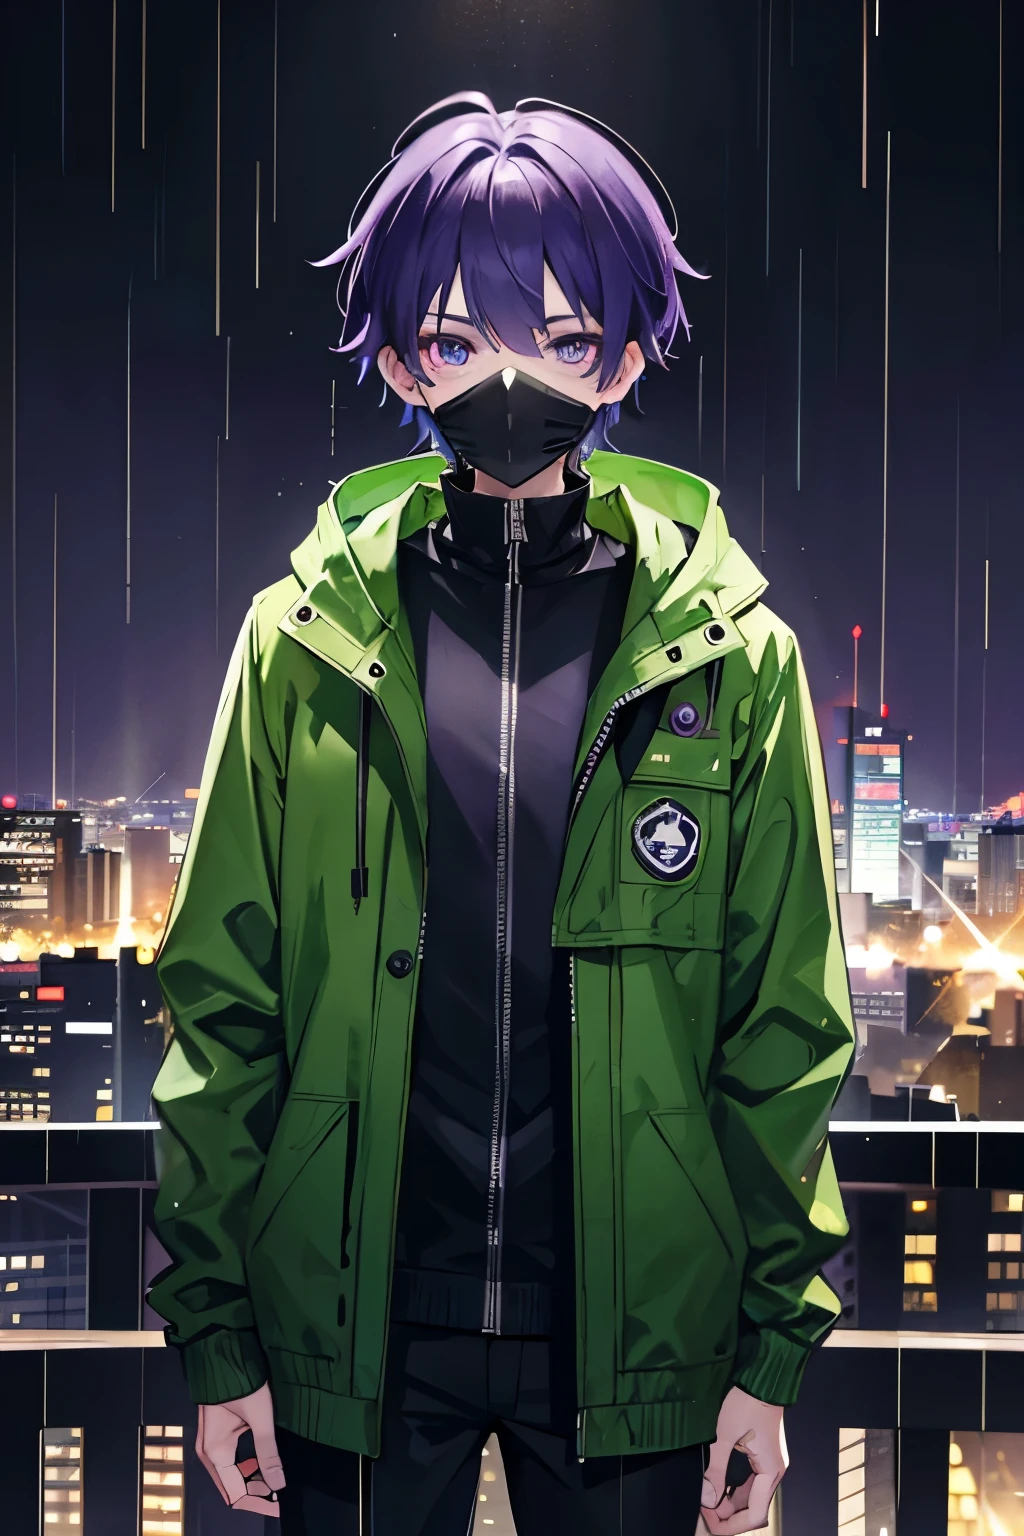 小男孩, 紫色的眼睛, 穿著綠色夾克, 綠色連帽夾克, , 黑褲子, 紫色頭髮齊肩高, 在城市, 雨城, 防毒面具, 傑作, 4k, 細緻的眼睛
